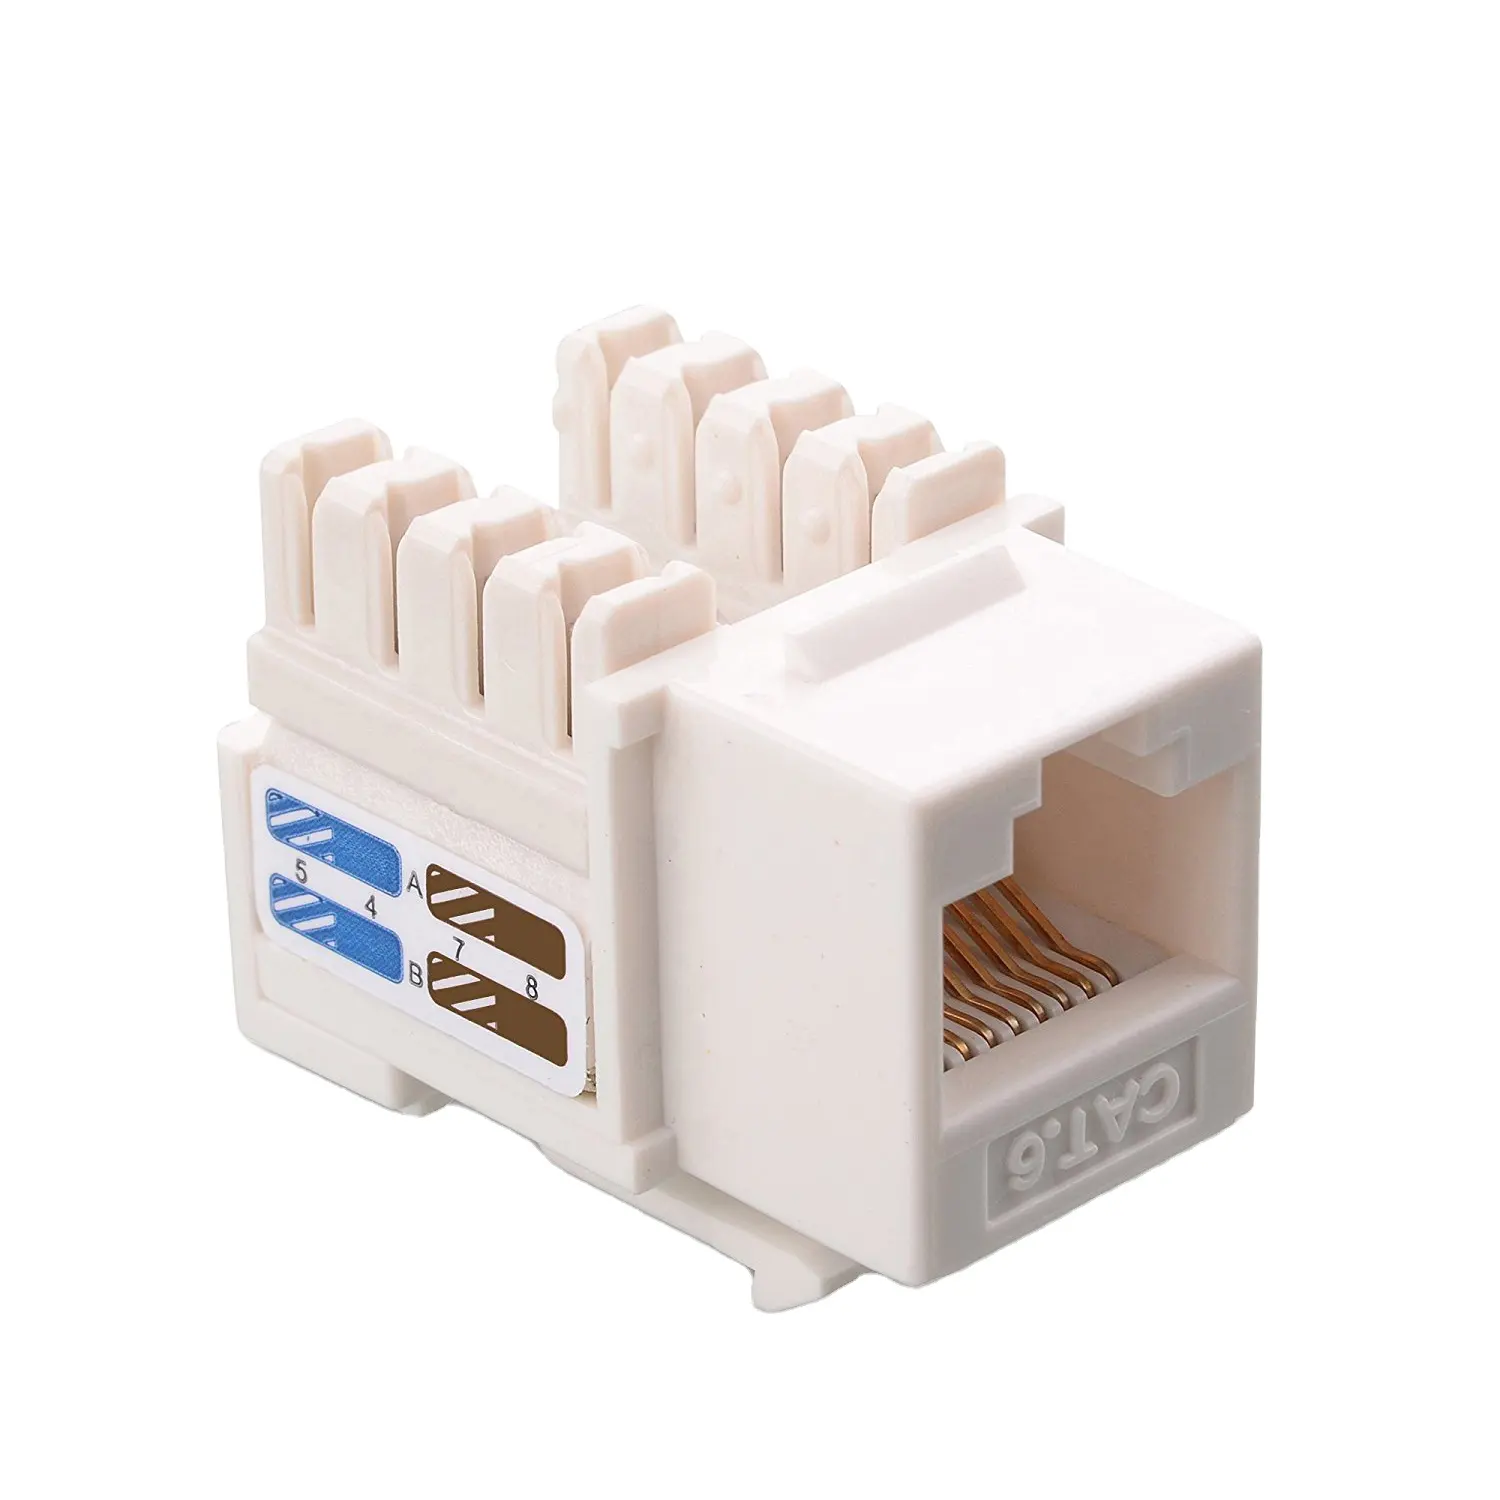 8p8c Ethernet Gigabit RJ45 conector modular red hembra altavoz enchufe de terminación de campo